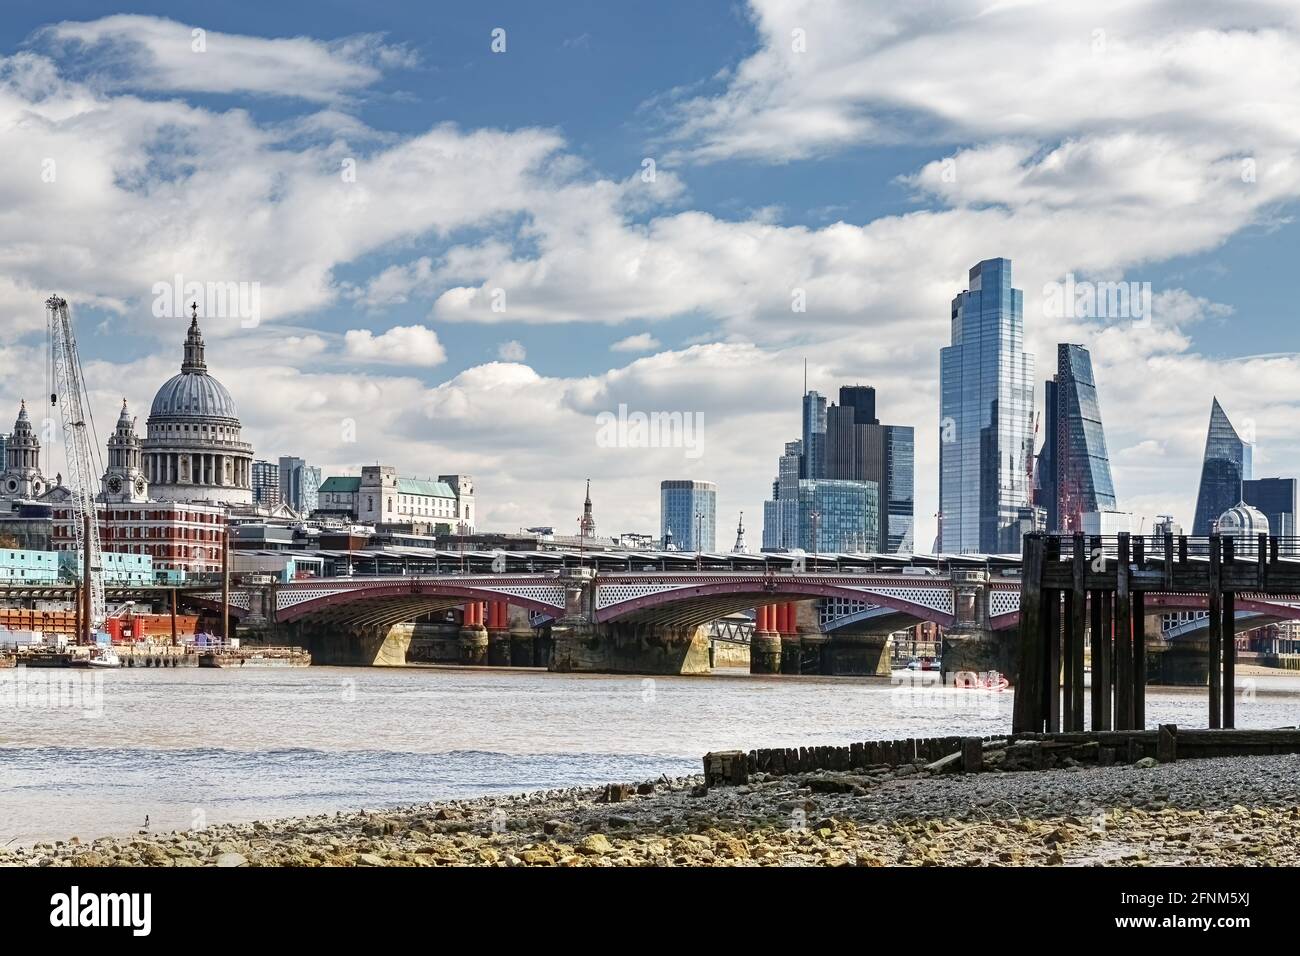 La ligne d'horizon de Londres vue depuis la rive vide sur la rive sud de la Tamise, avec l'architecture moderne vue derrière le pont de Waterloo Banque D'Images